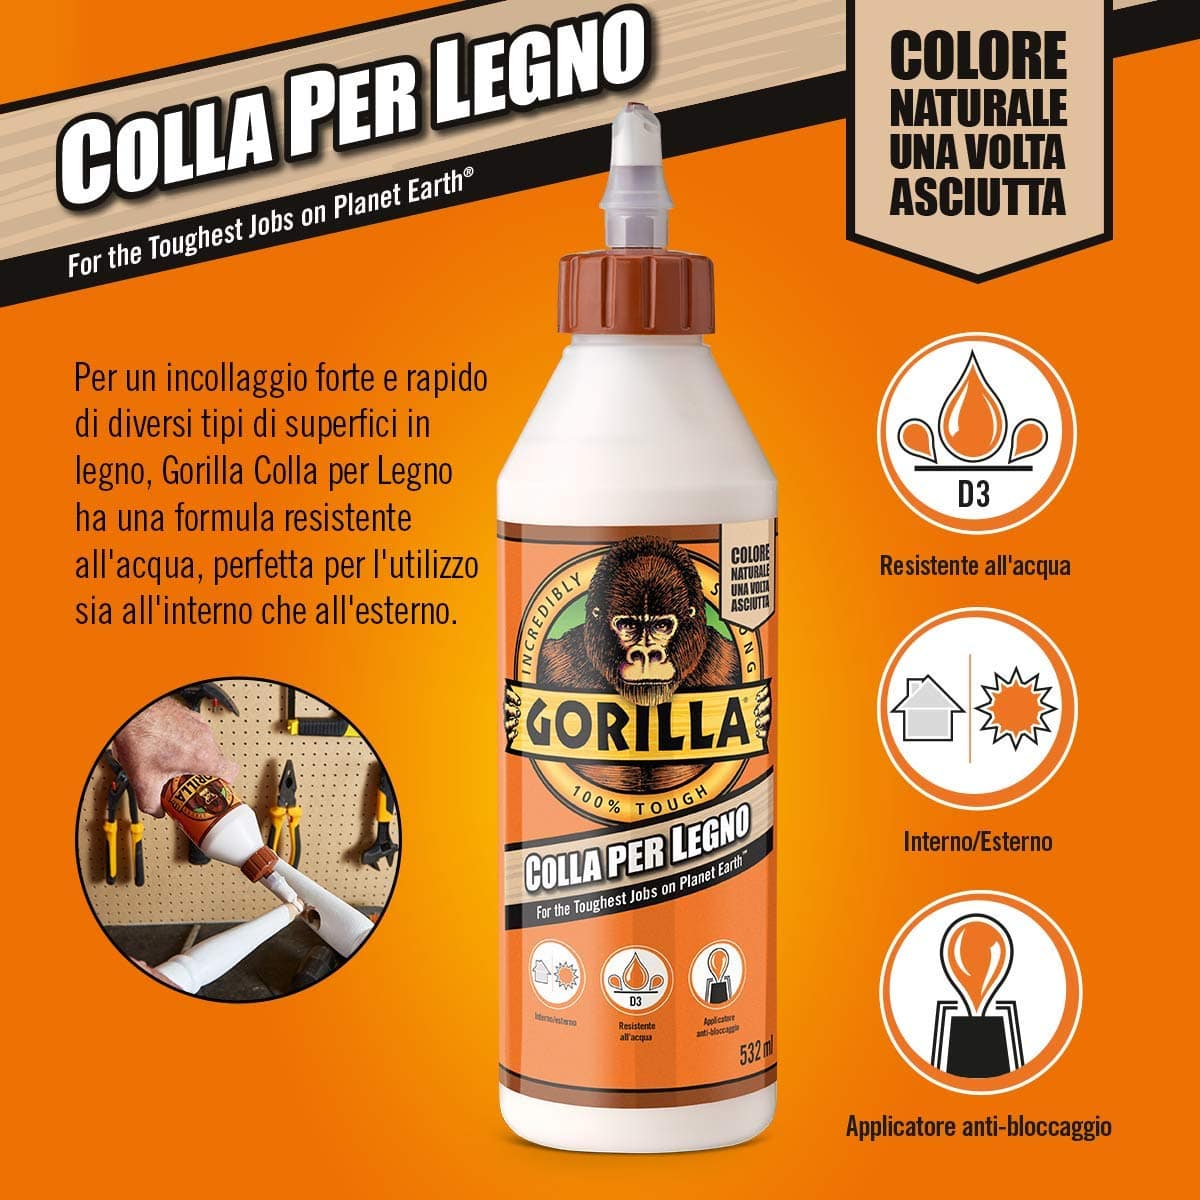 Gorilla Colla Per Legno 532ml Resistente all'acqua Adatta per Interni ed Esterni.